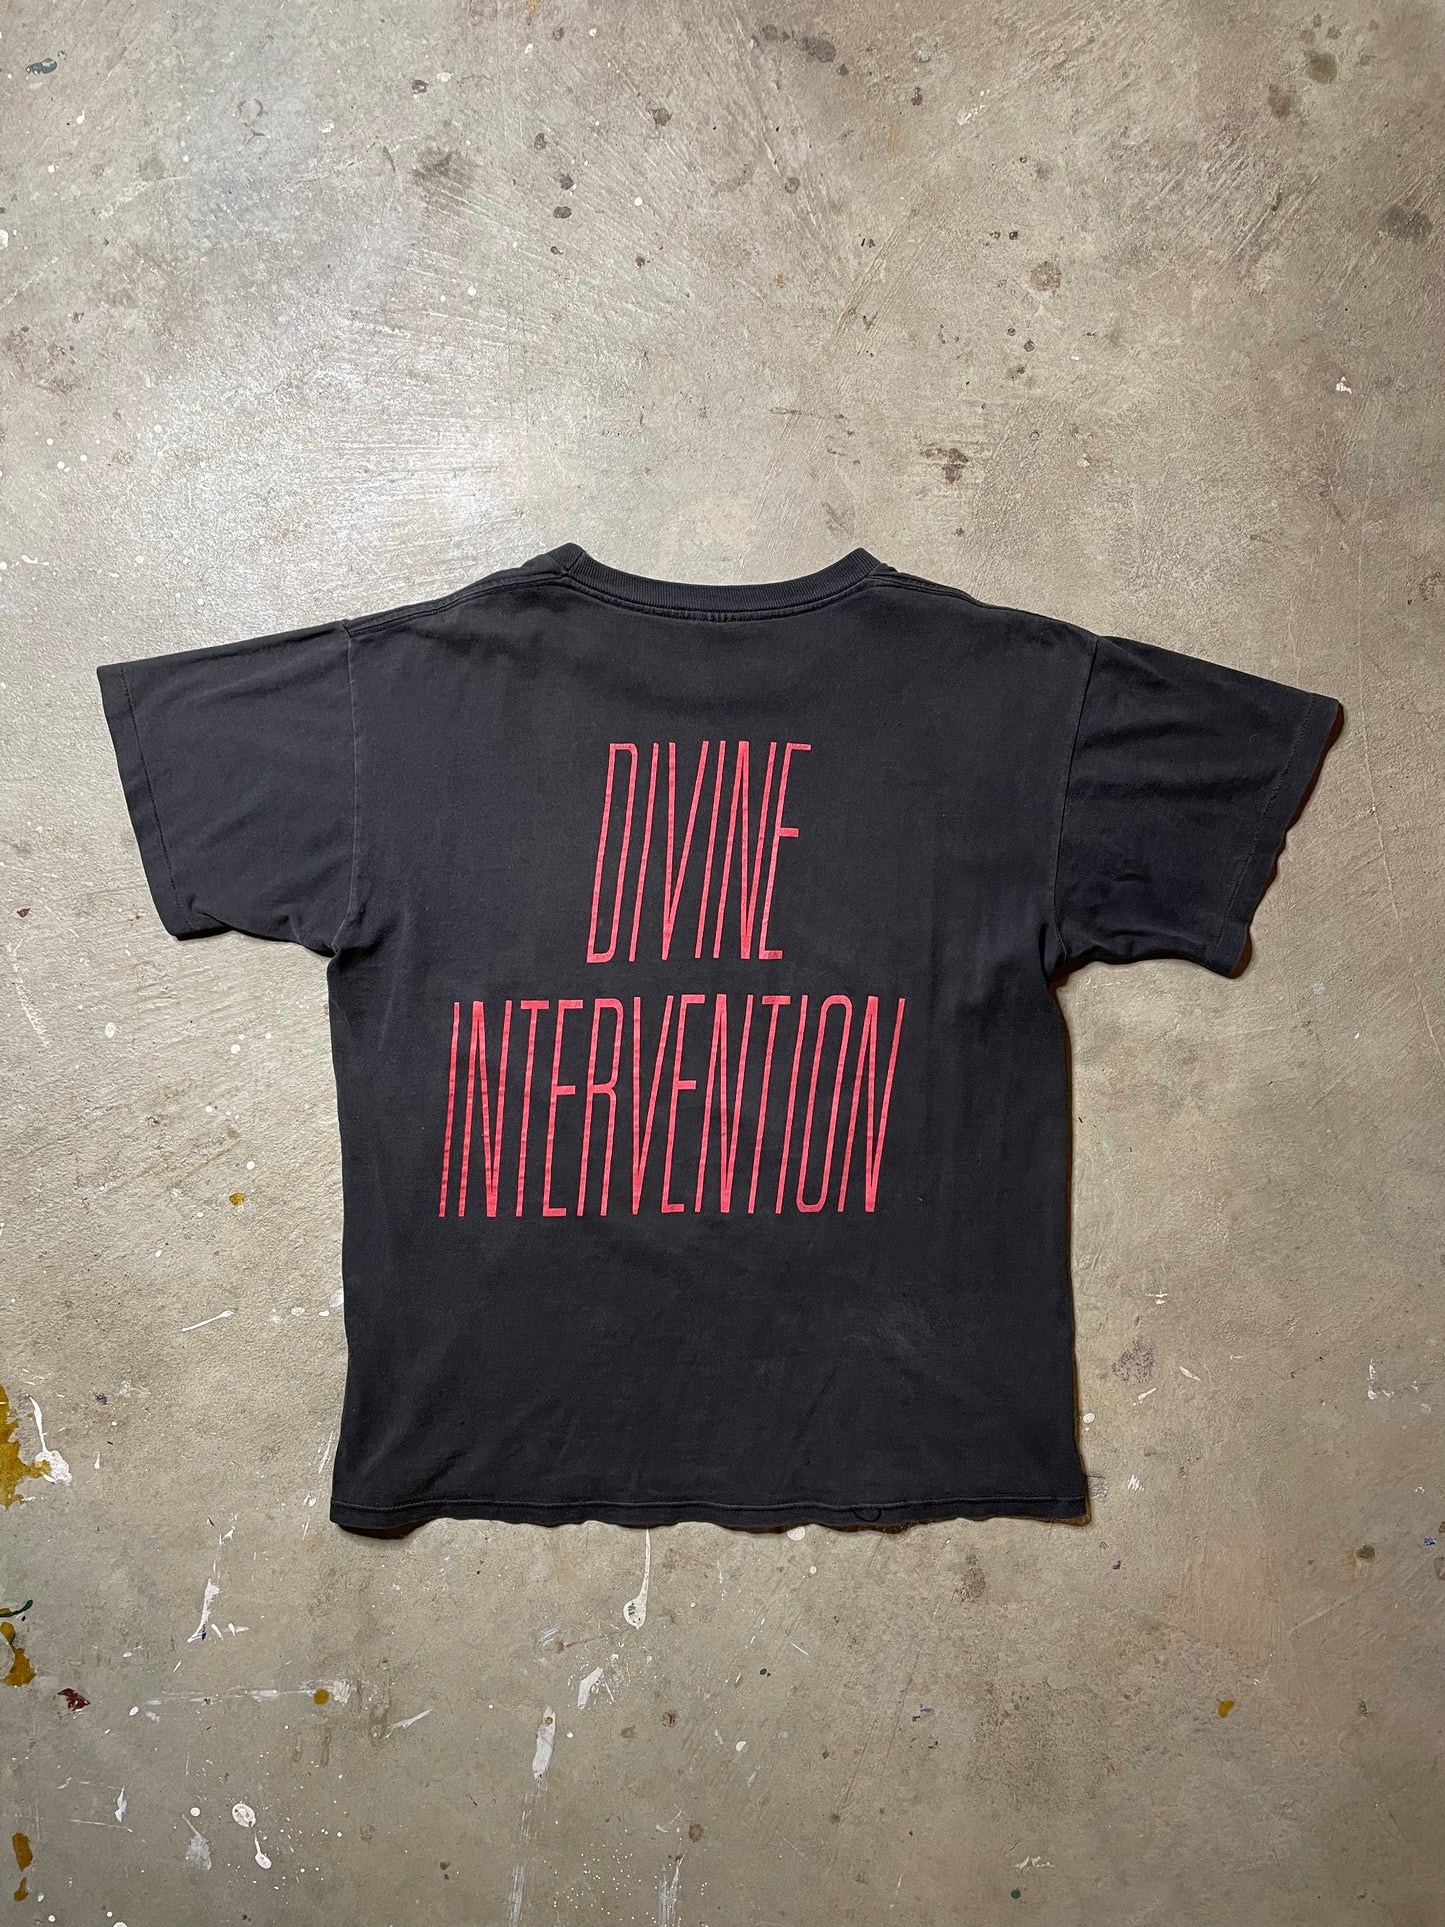 1994 Slayer ‘Divine Intervention’ Tee